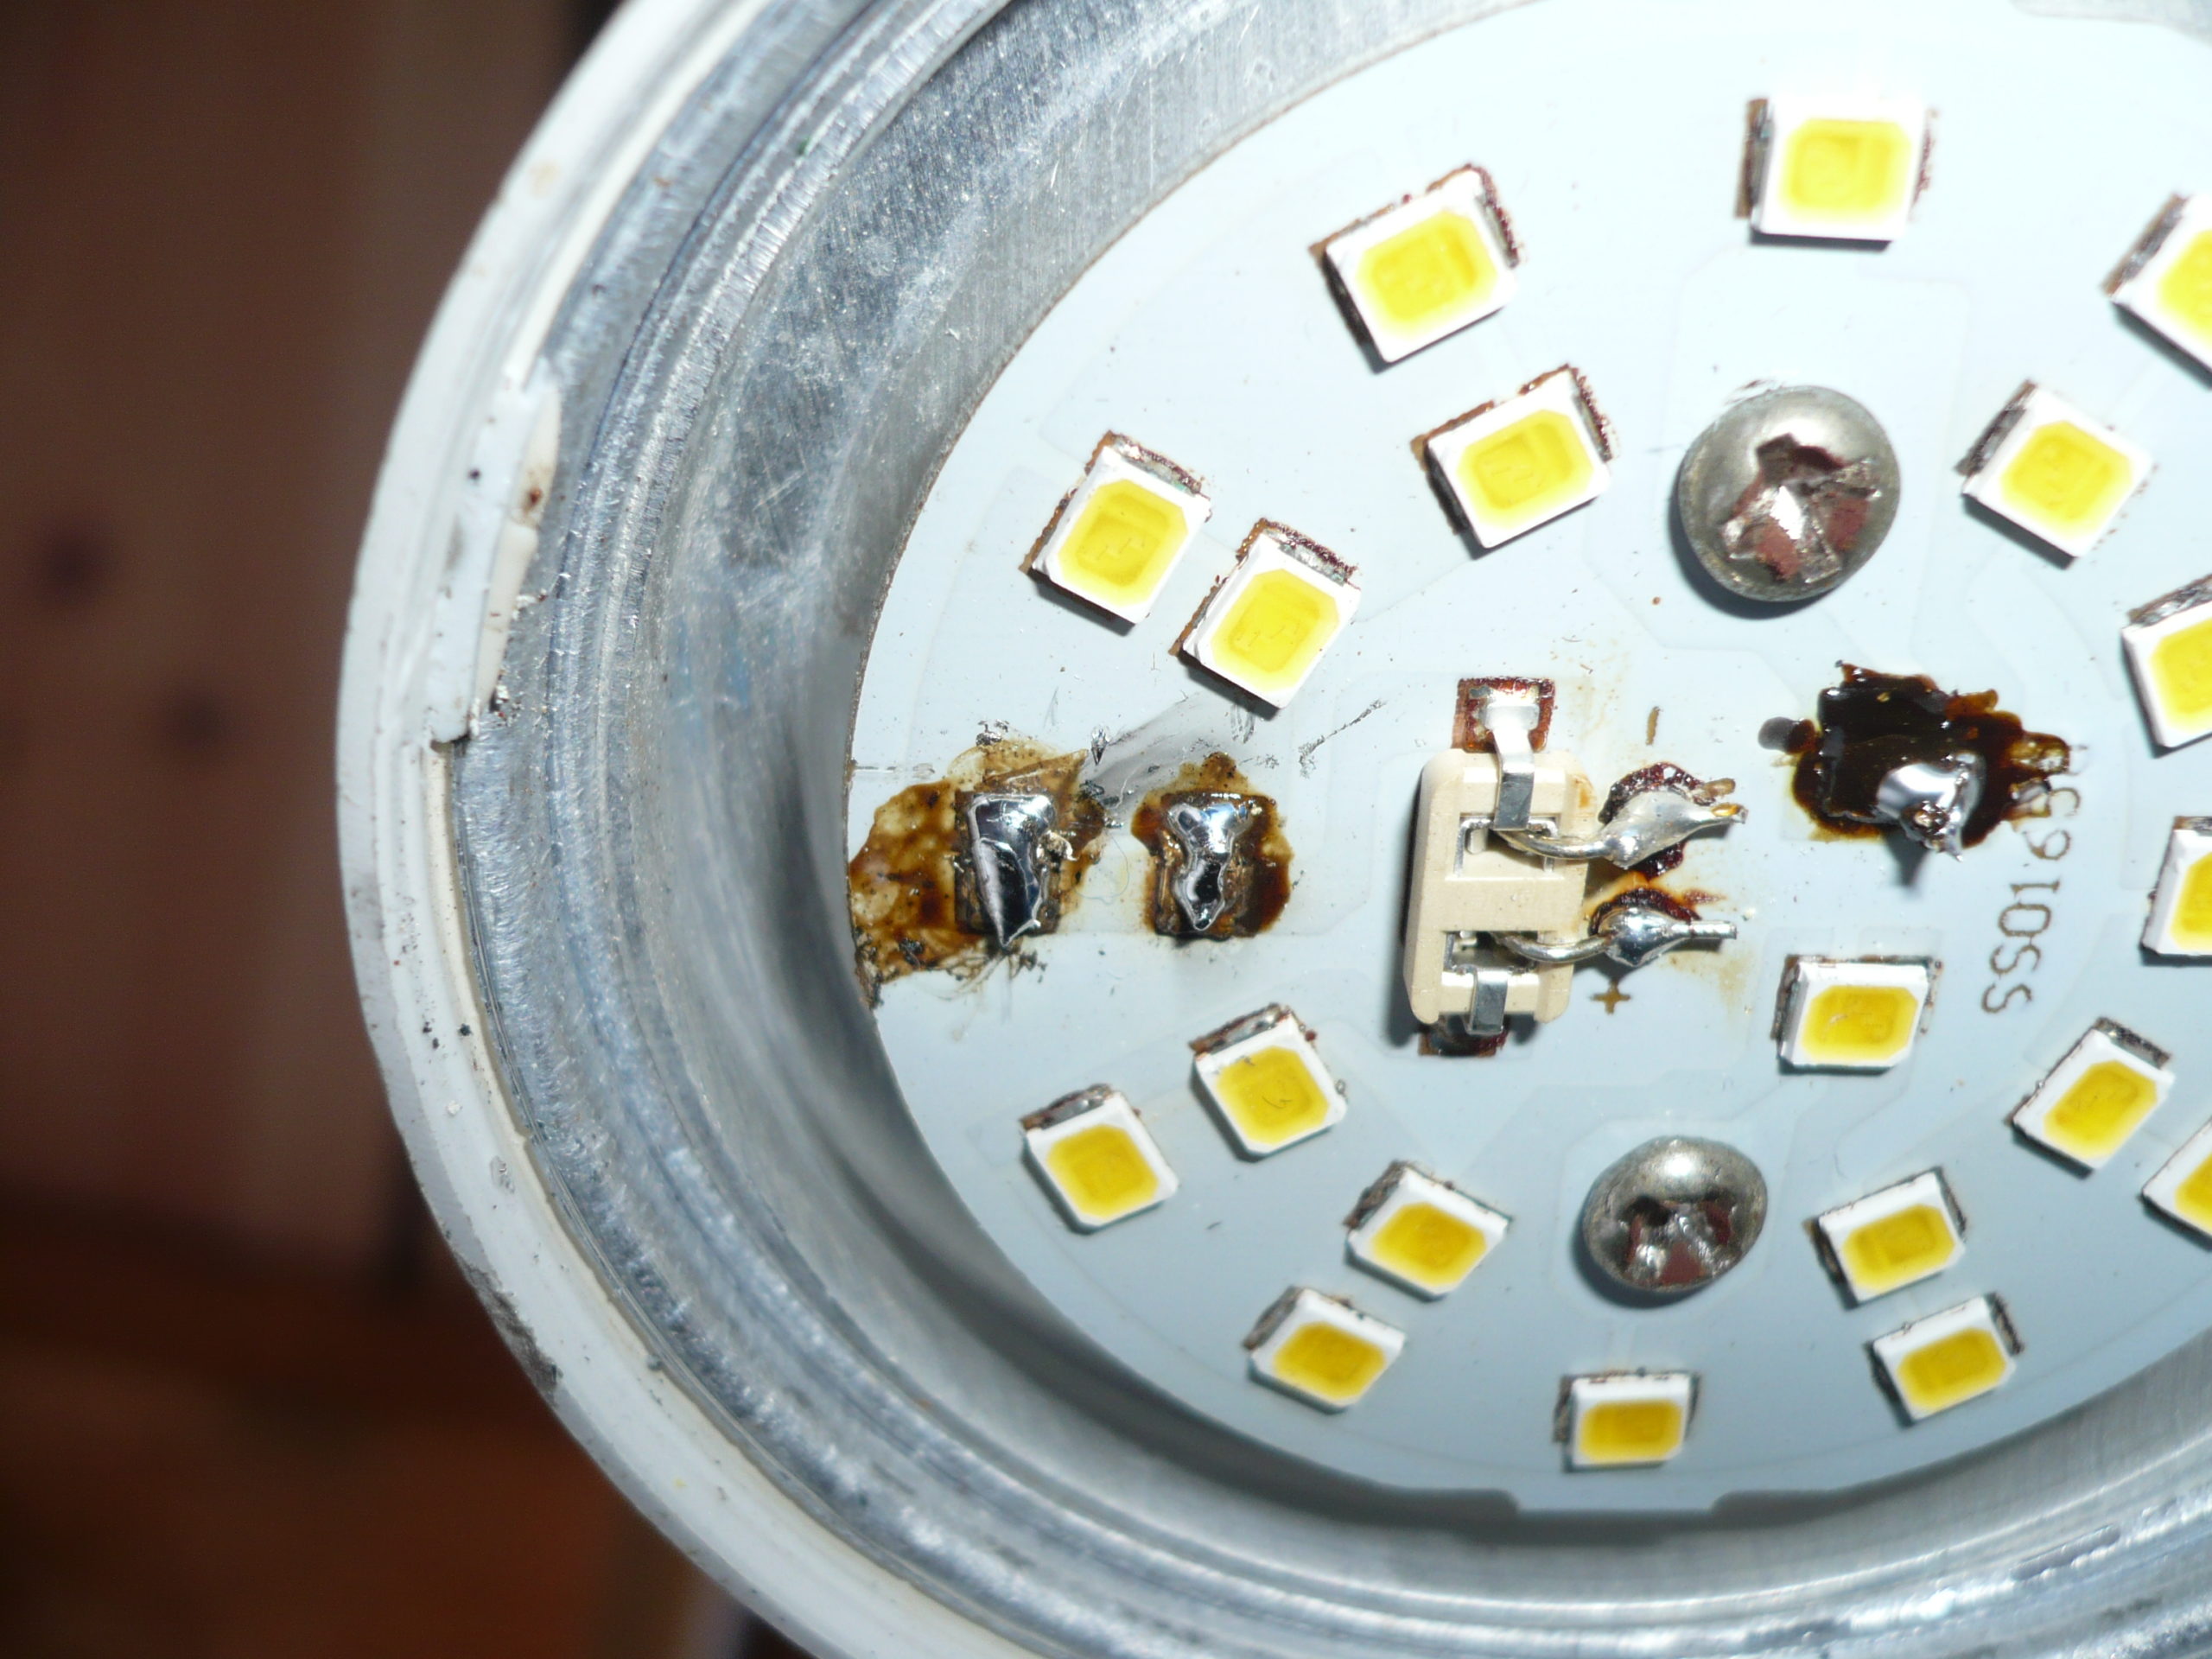 Светодиодная лампа ремонт своими руками на 220в. Отремонтировать диодную лампочку на 220 вольт. Ремонтируем диодную лампочку 220 вольт. Разбираем светодиодную лампу 220 вольт. Отремонтировать диодную лампочку на 220 вольт своими руками.